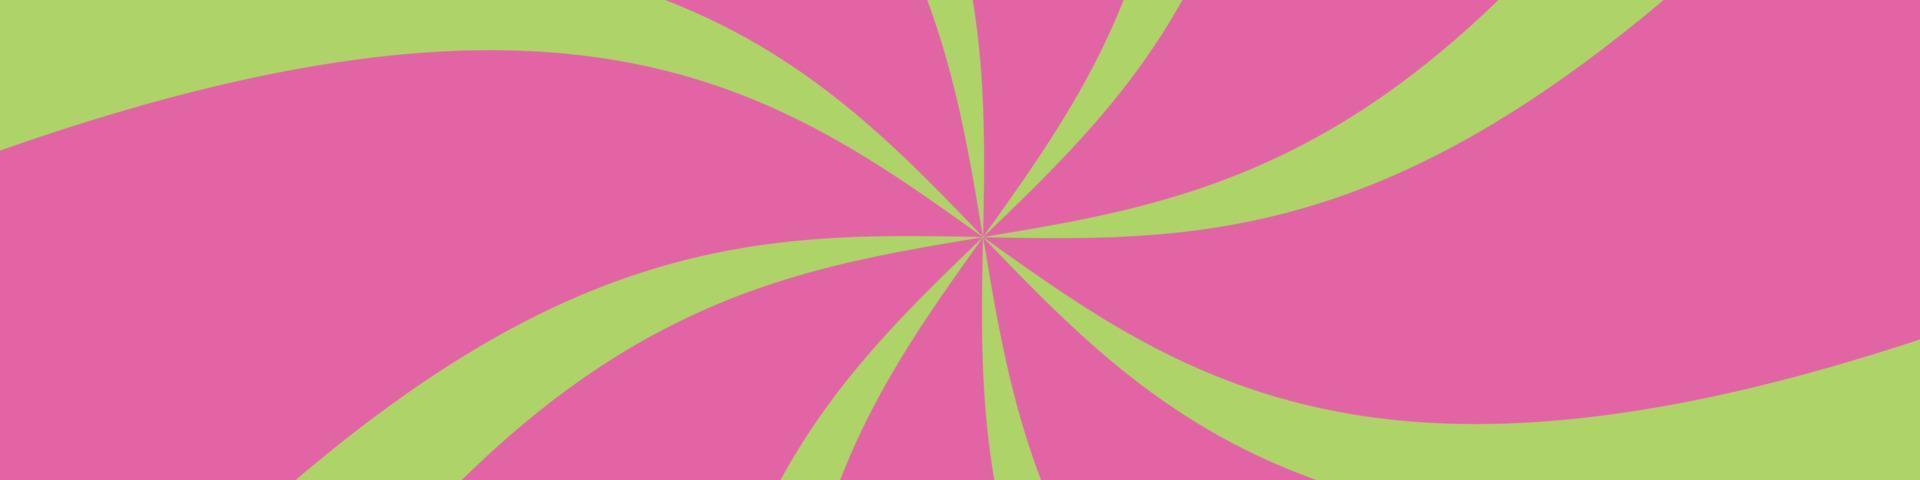 rosa radialer hintergrund. Spiralstrahl Starburst. vektormusterillustration vektor